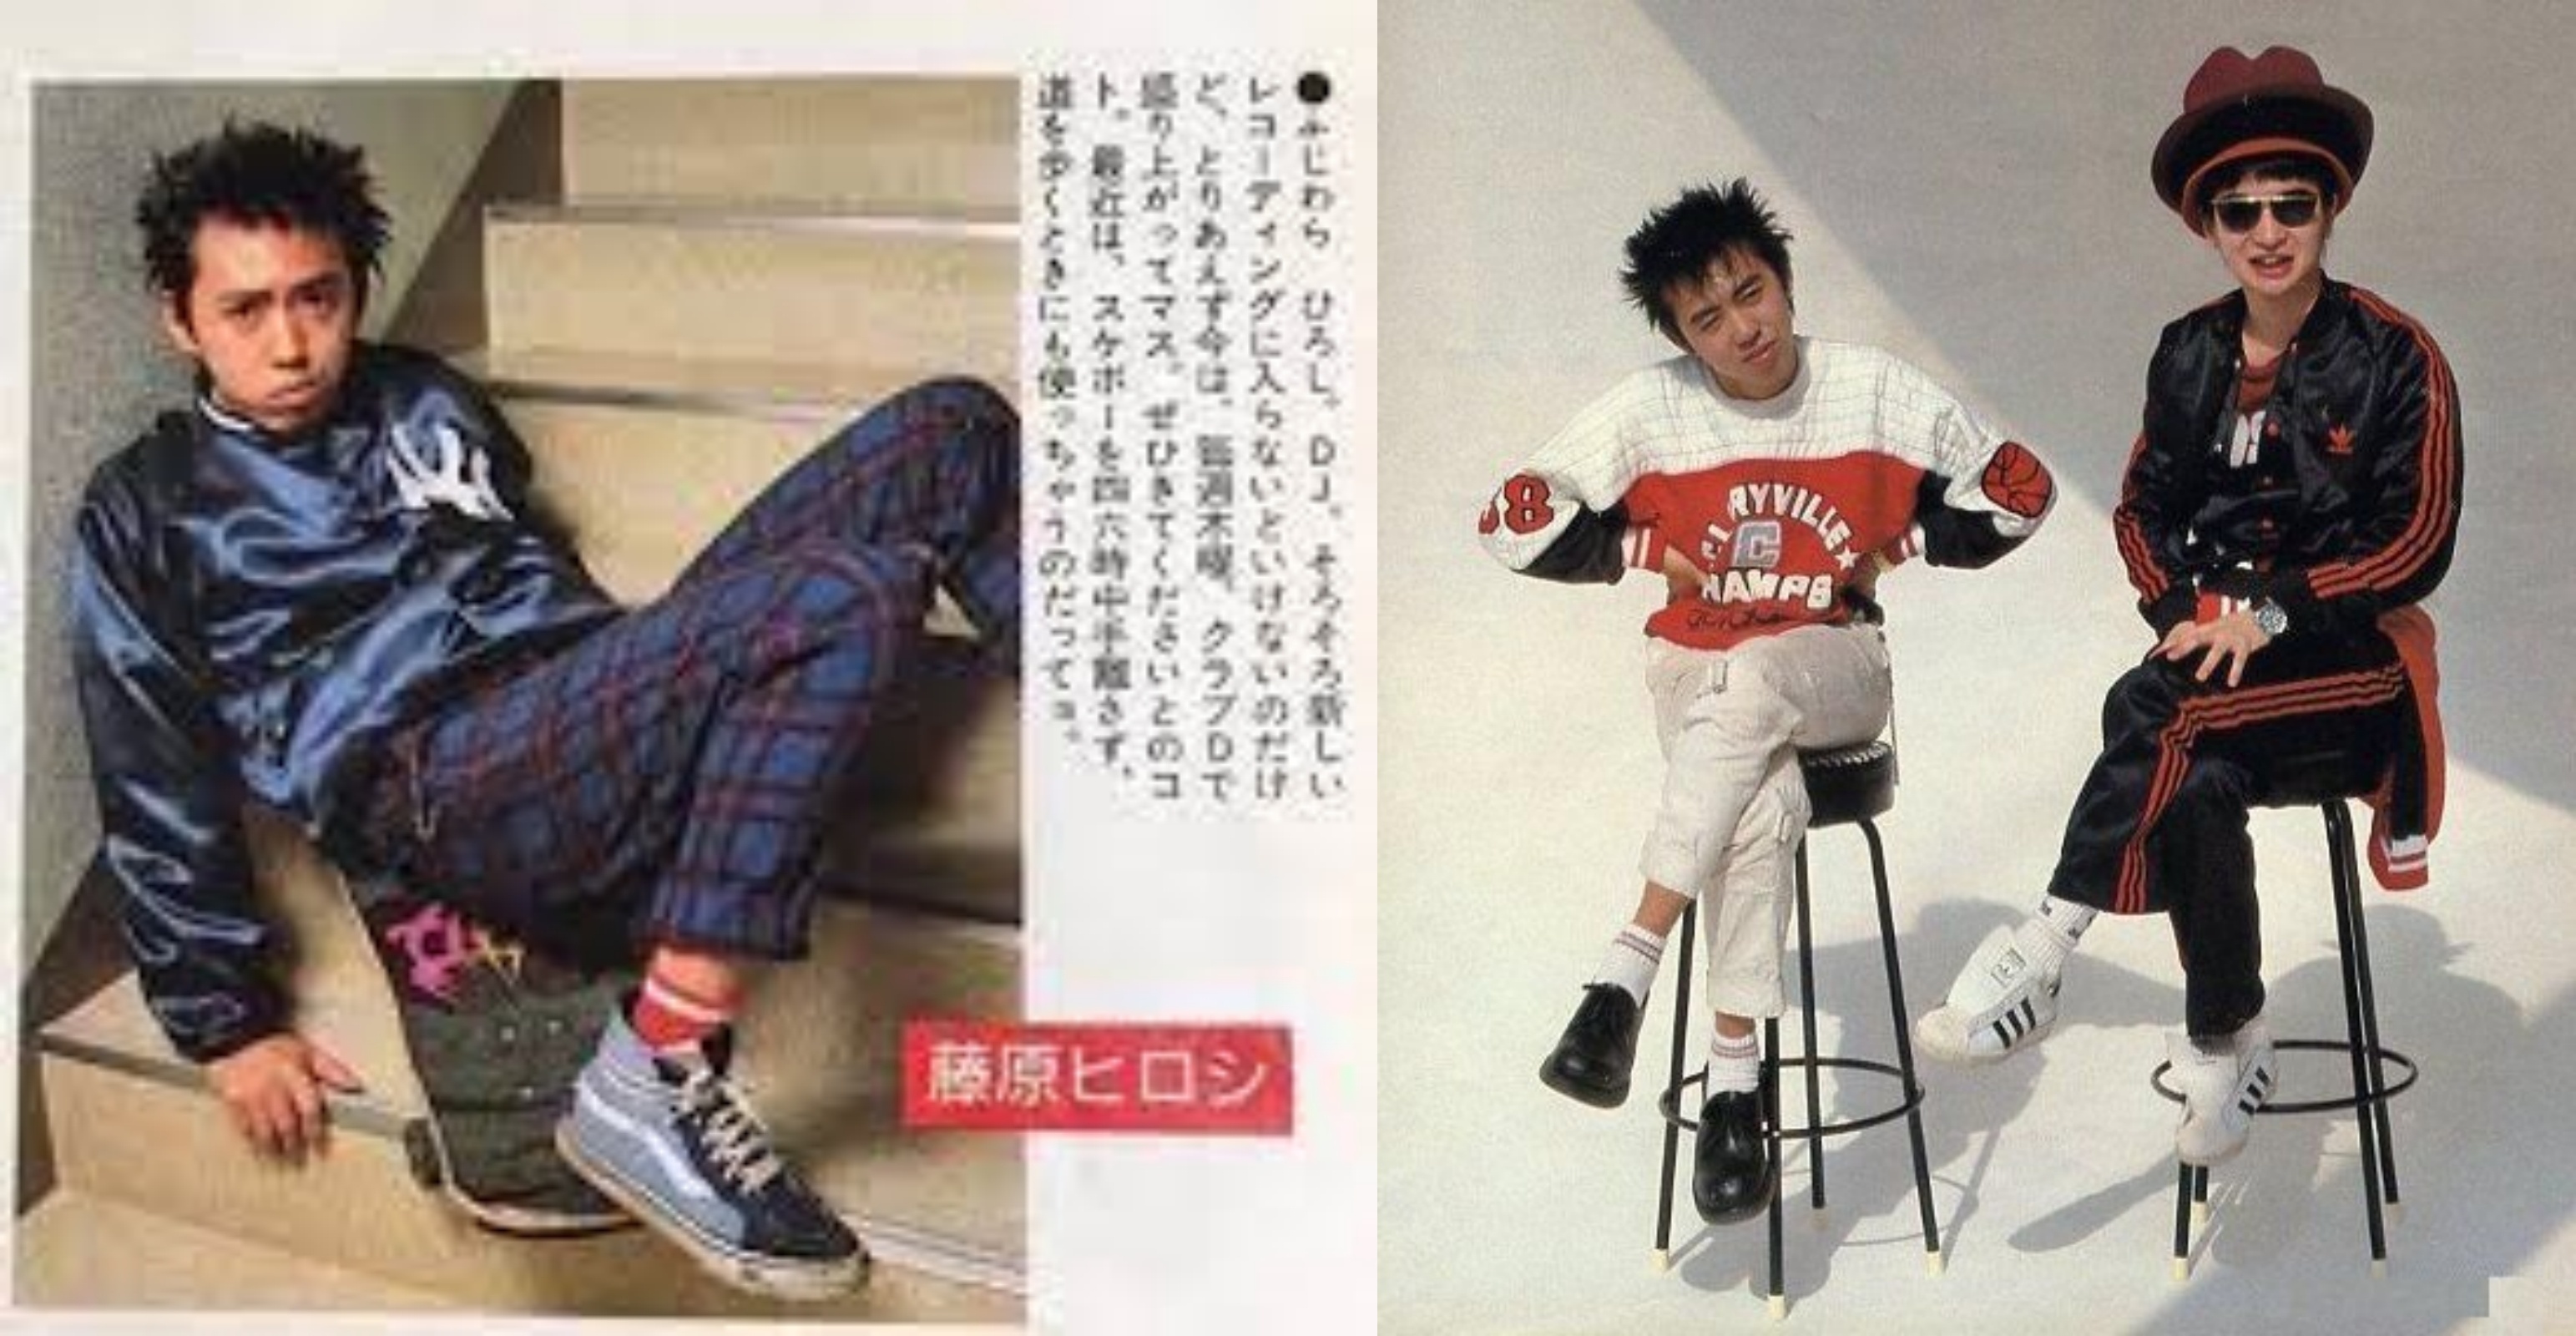 90년대 패션 잡지에 출연한 후지와라 히로시. 펑크 기반의 스트리트 패션, 그리고 애티튜드가 당시 최첨단 유행이었어요. 오른쪽 사진의 모자 쓴 남자는 TINY PANX의 타카기 칸.